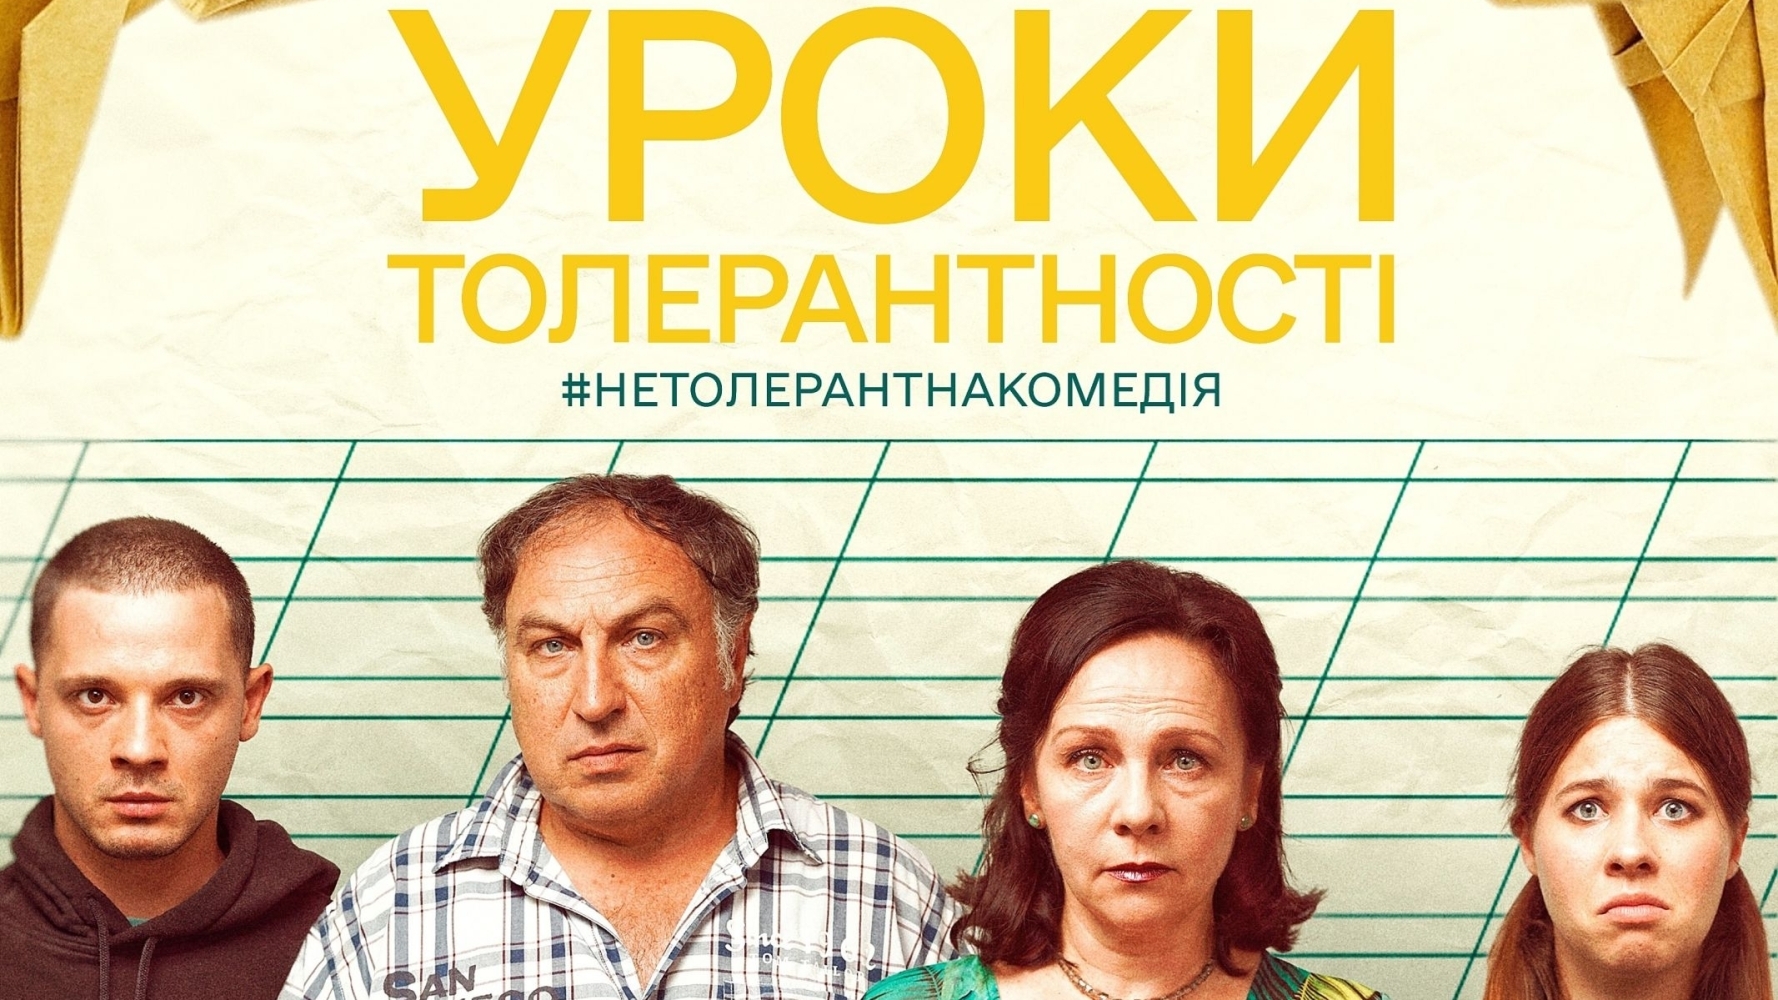 Український фільм Уроки толерантності здобув успіх у прокаті, зібравши 1,7 мільйона гривень